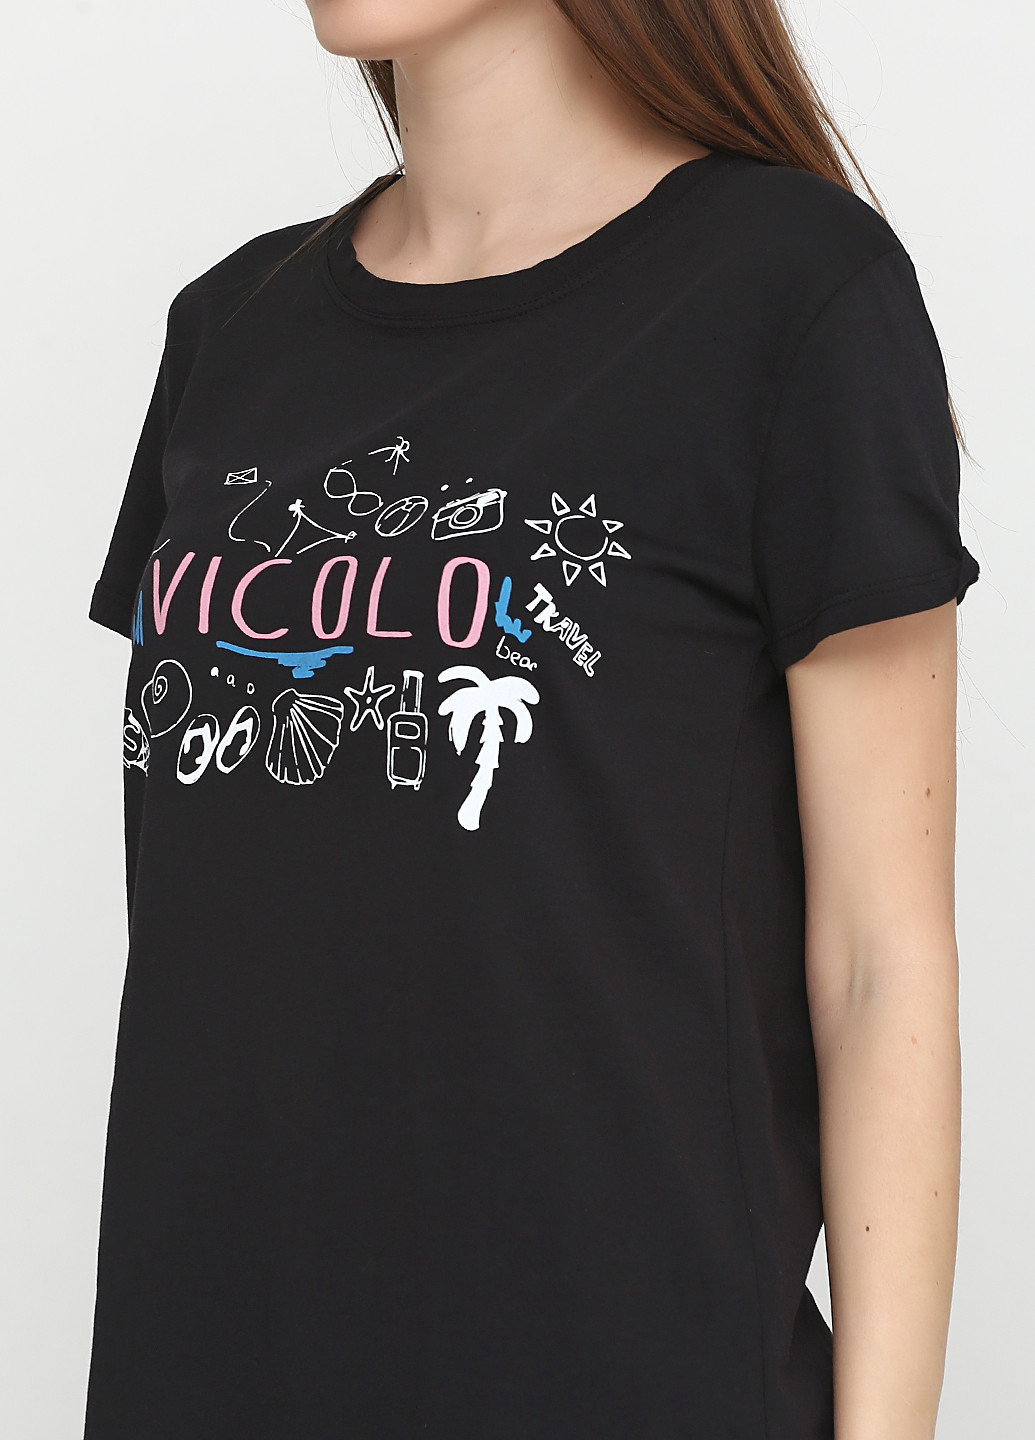 Черная летняя футболка Vicolo